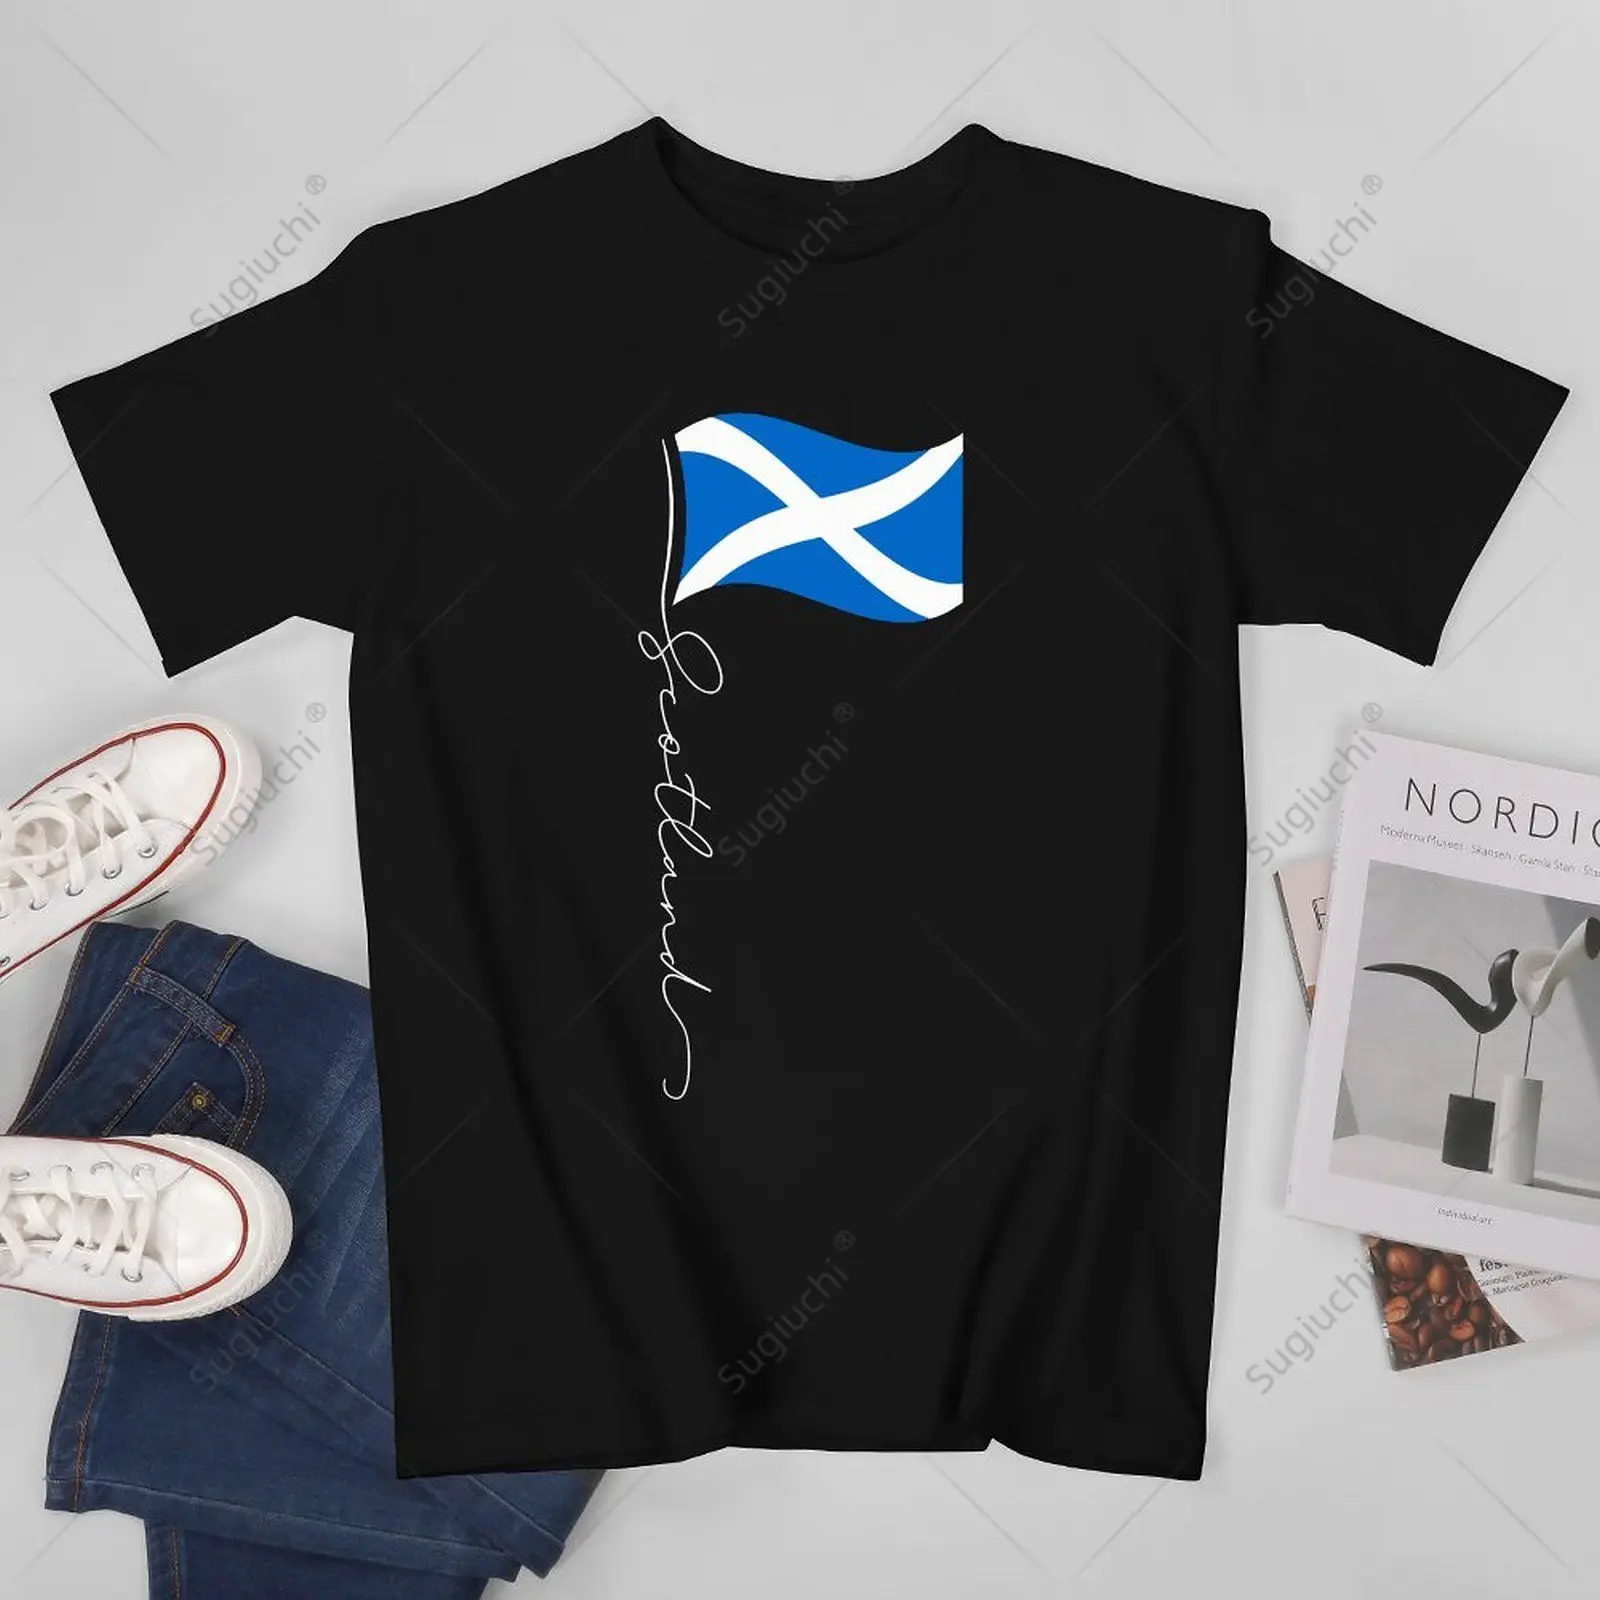 Унисекс, мужчины, флаг Шотландии, фирменный флагшток - футболка с патриотическим шотландским флагом, футболки, футболки, женские футболки, футболки из 100% хлопка для мальчиков